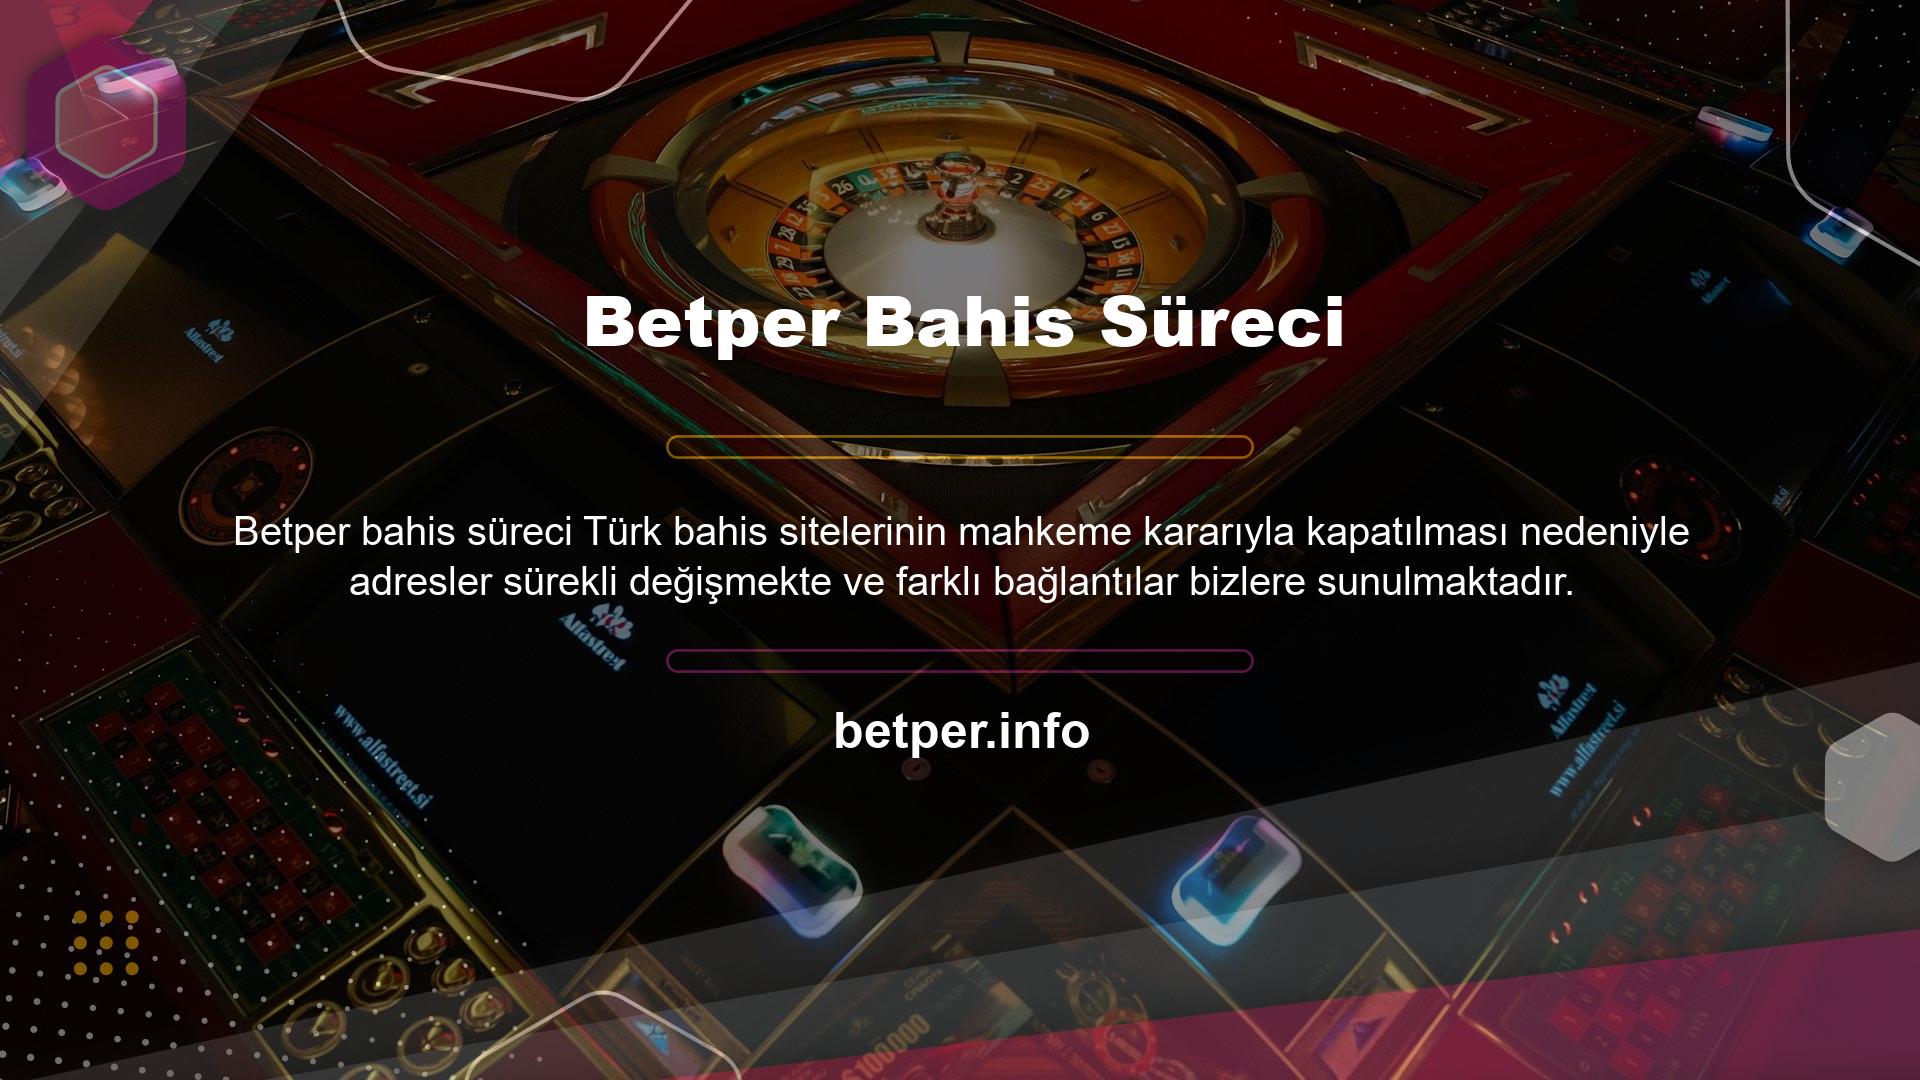 Bu nedenle ekip, Betper giriş bilgilerini periyodik olarak değiştirir ve hesabınıza yeni giriş bilgileri üzerinden erişebilirsiniz